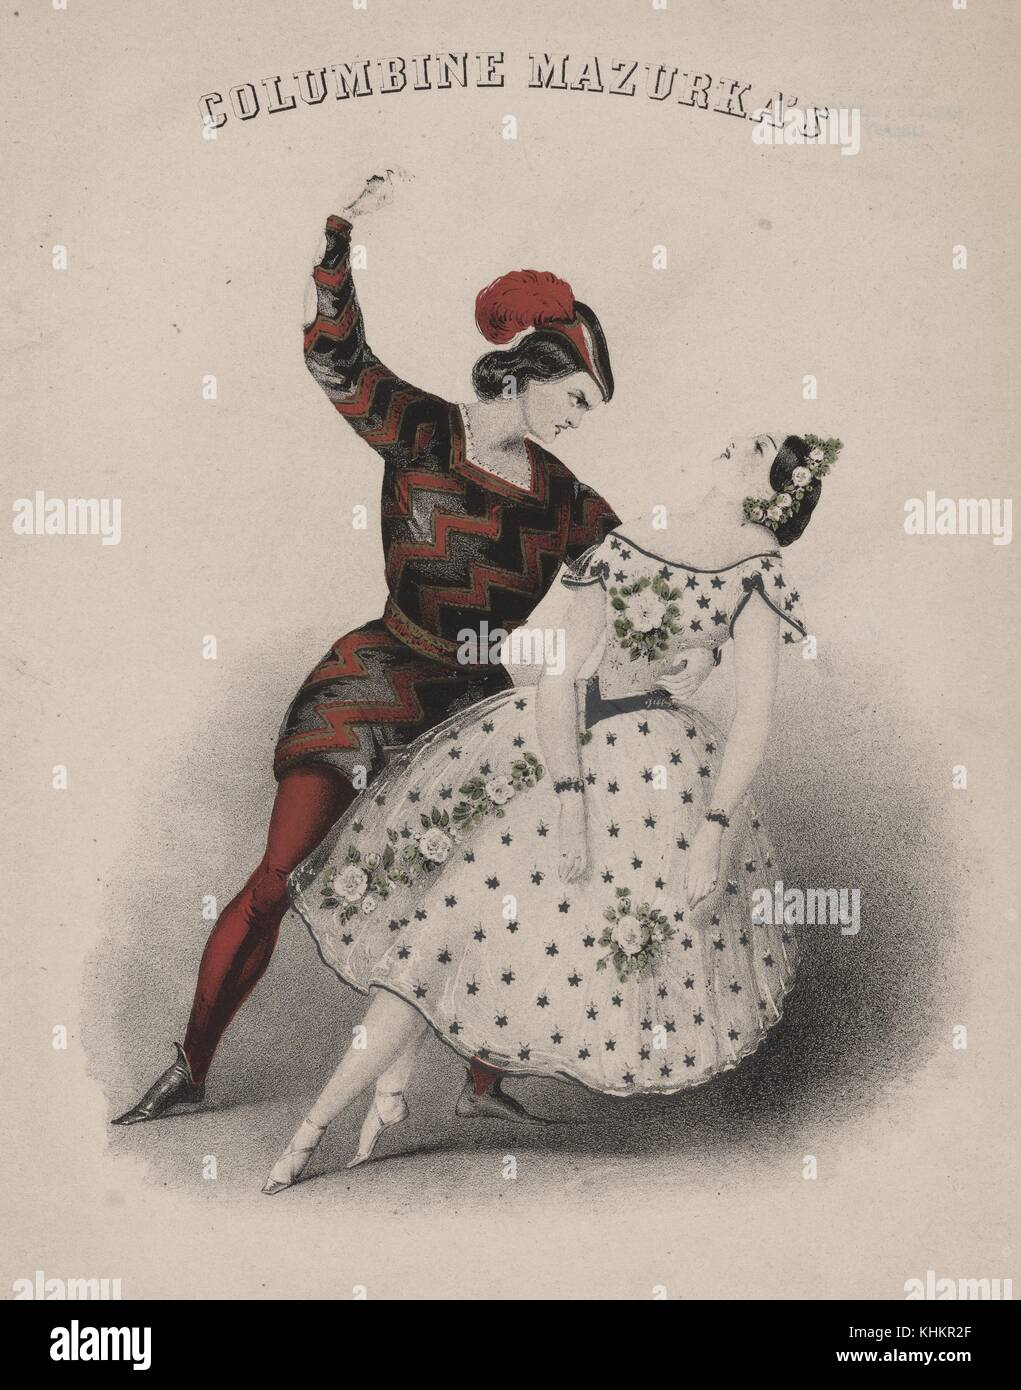 Eine Farblithographie mit zwei Leuten zusammen tanzen, der Mann trägt eine reich verzierte schwarze und rote Kostüm mit einem passenden hut mit feder, die Frau trägt ein weißes Kleid mit Sterne und Blumen dekoriert, sie hat auch Sterne in ihr Haar, das Bild erschien als Teil einer Werbung für eine Leistung eines polnischen Volkstanz namens Columbine Mazurka, 1846. Von der New York Public Library. Stockfoto